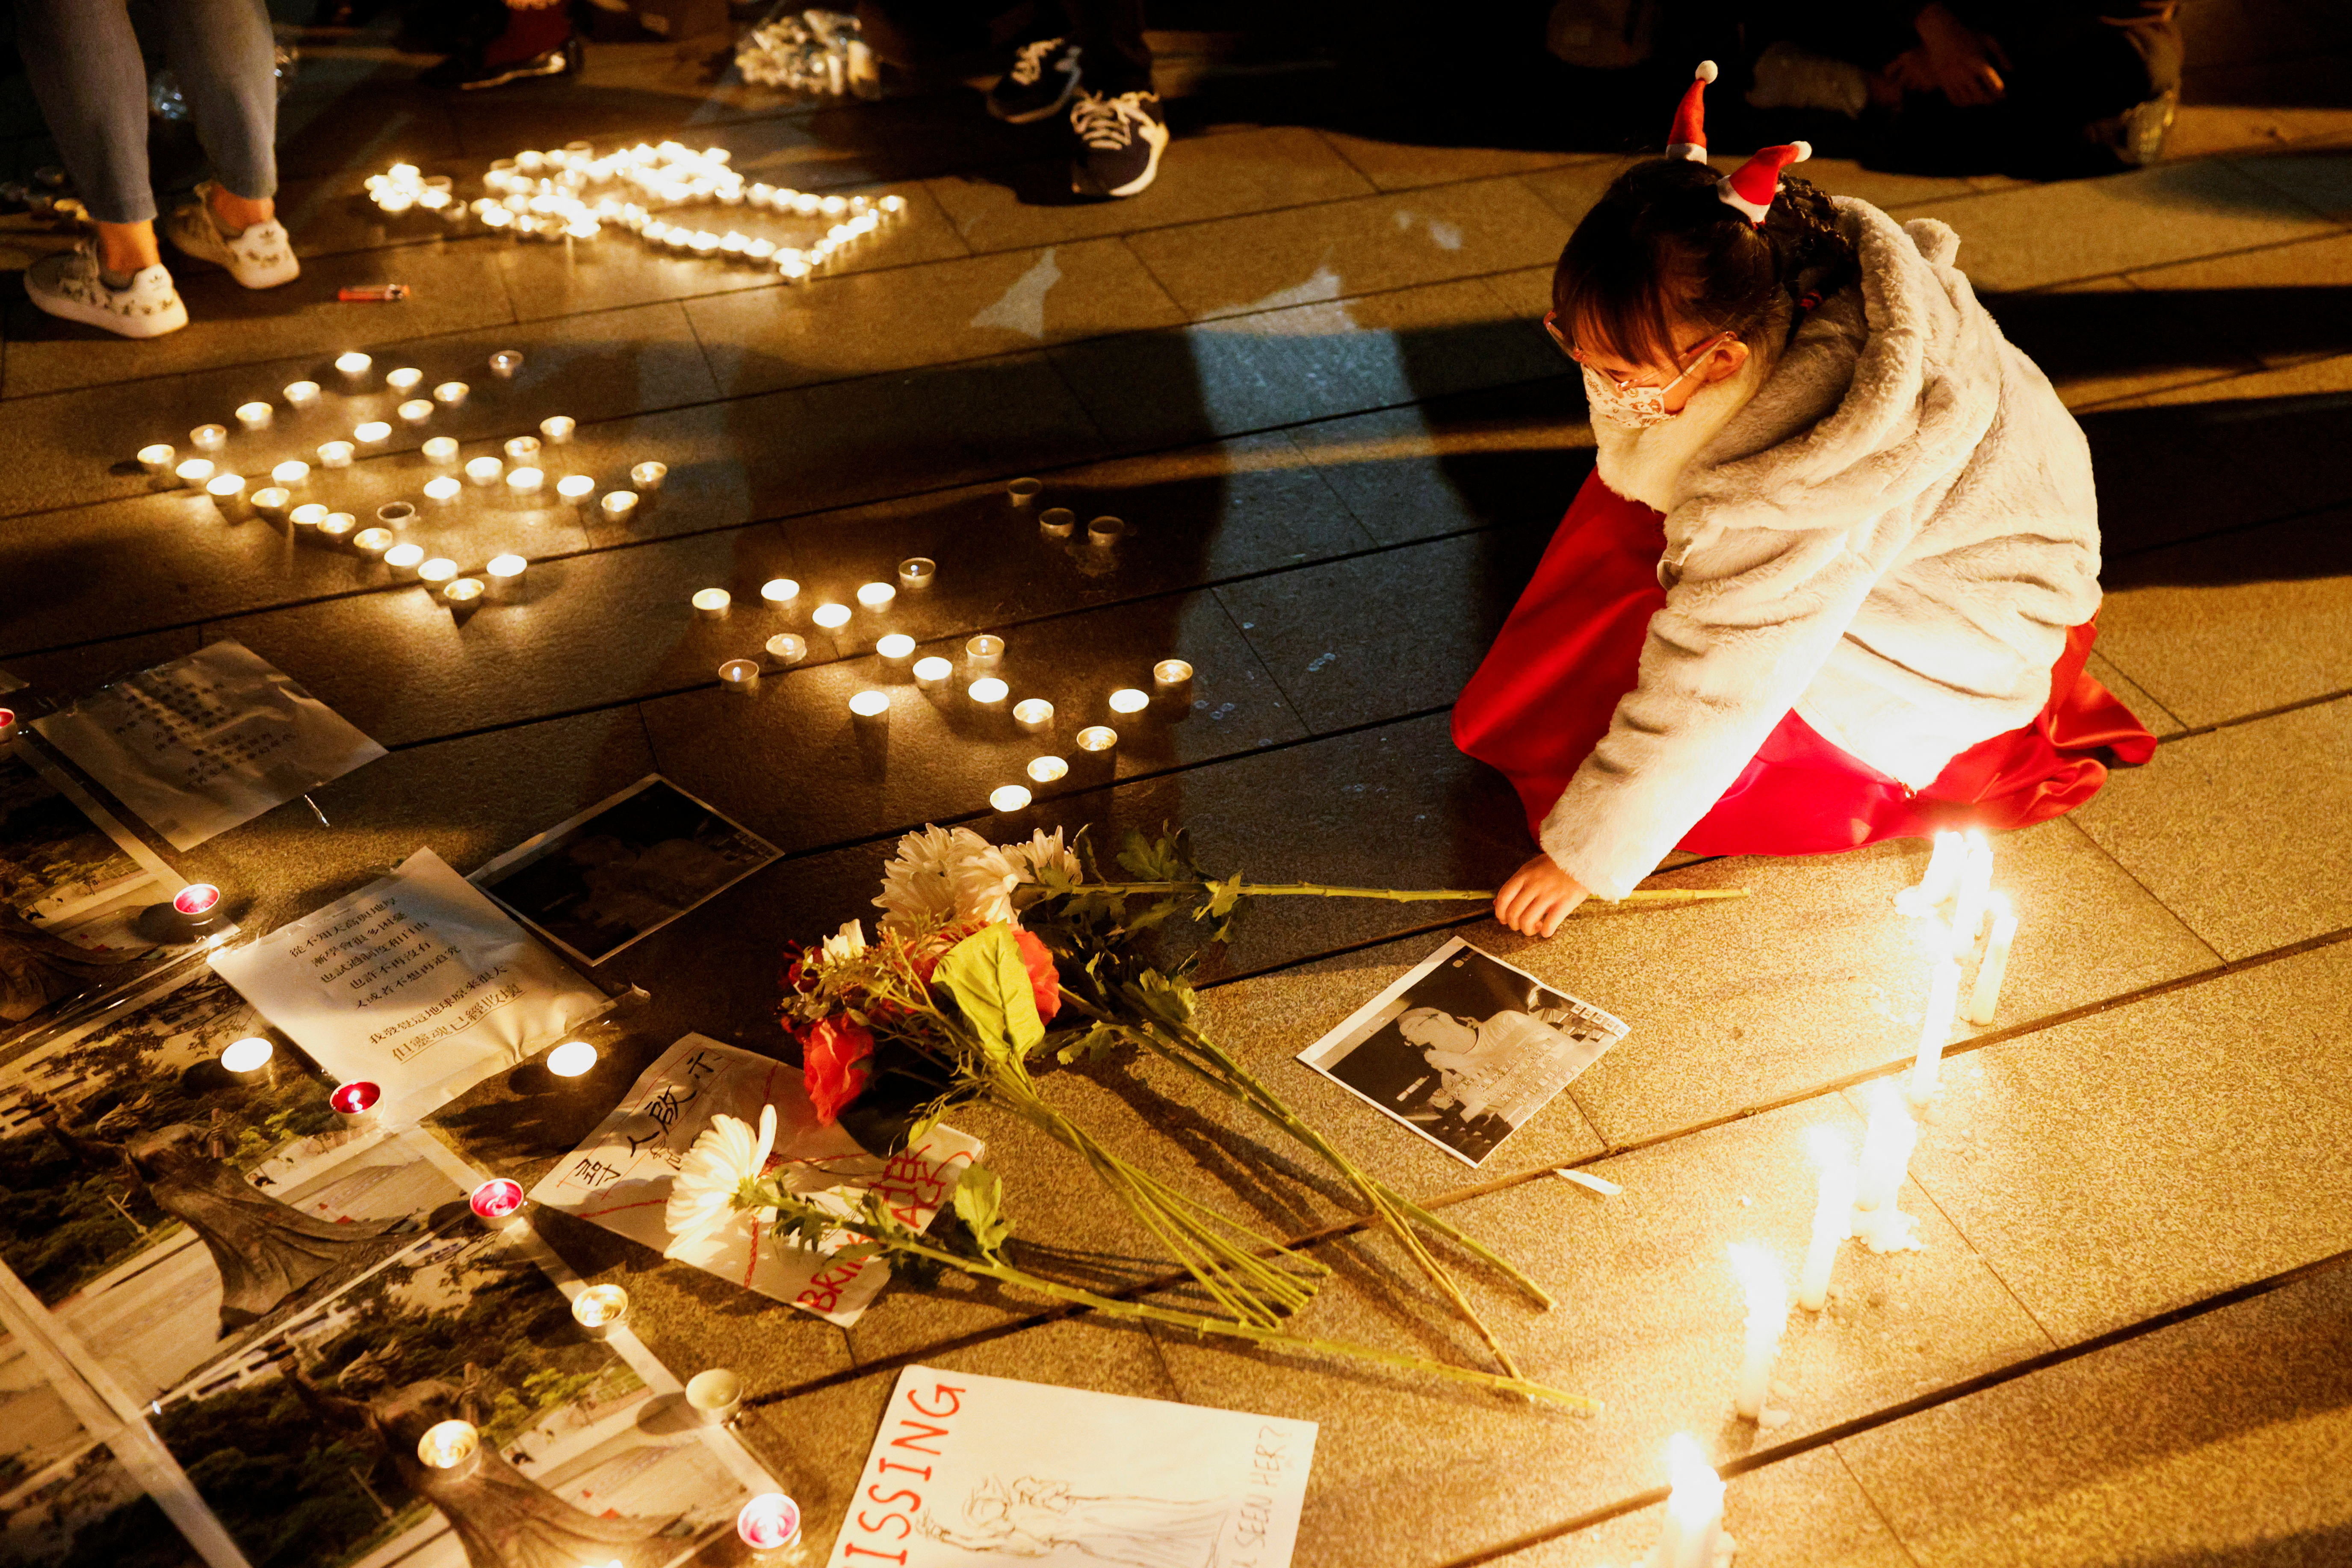 Una niña coloca un ramo de flores para rendir homenaje a las víctimas de la represión de la Plaza de Tiananmen en Beijing el 4 de junio de 1989, en el lugar donde solía estar la estatua de la Diosa de la Democracia, en la universidad china de Hong Kong, después de que fue removida por autoridad escolar, en Hong Kong, China, 24 de diciembre de 2021. REUTERS/Tyrone Siu
